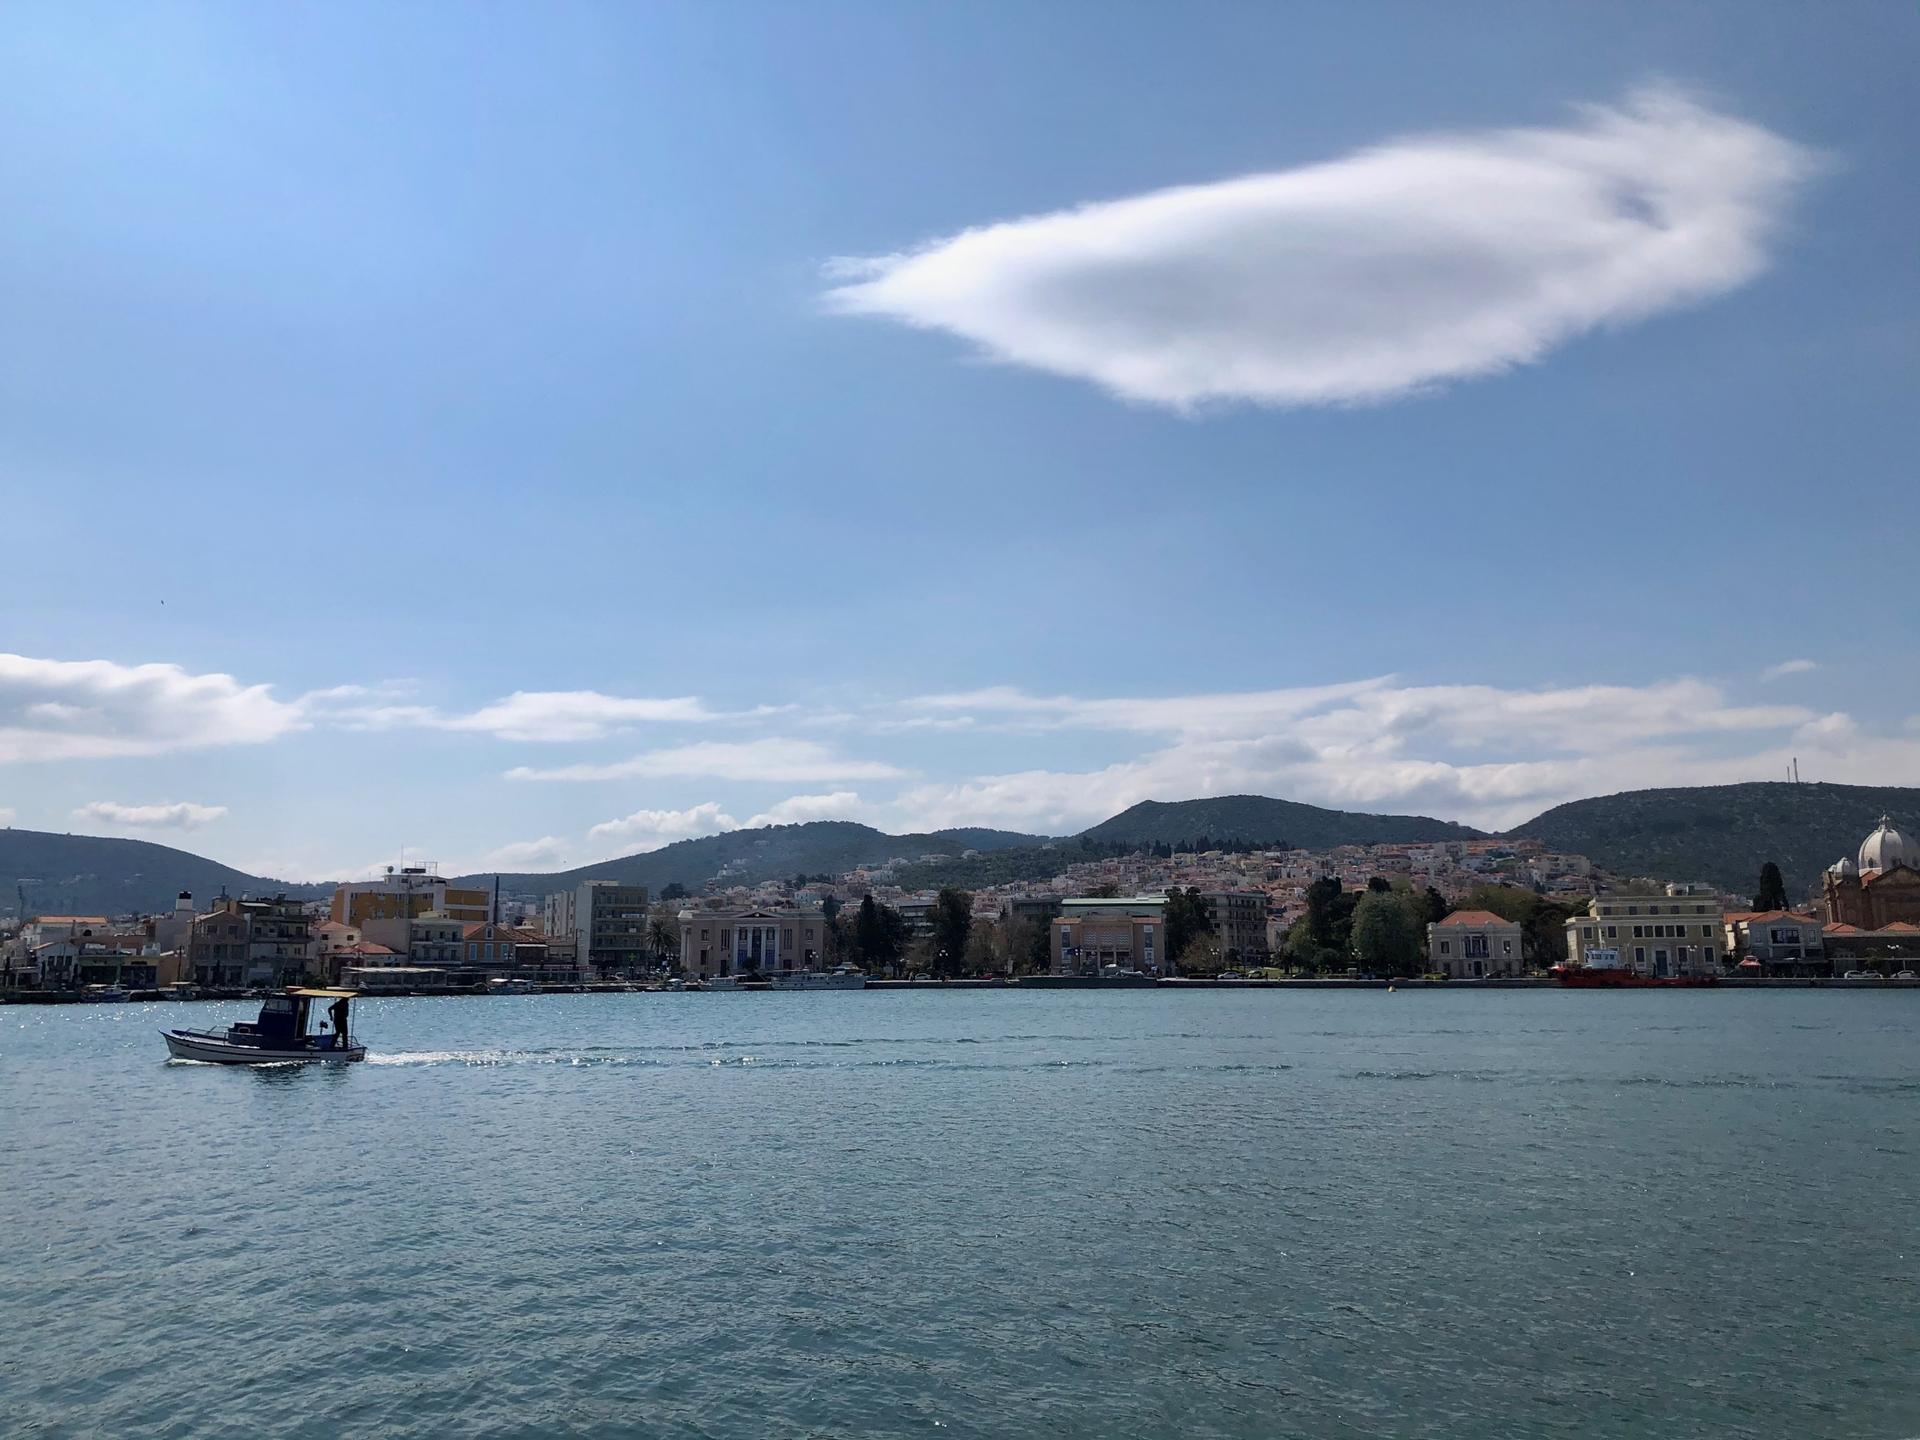 The port of Mytilene on Lesbos